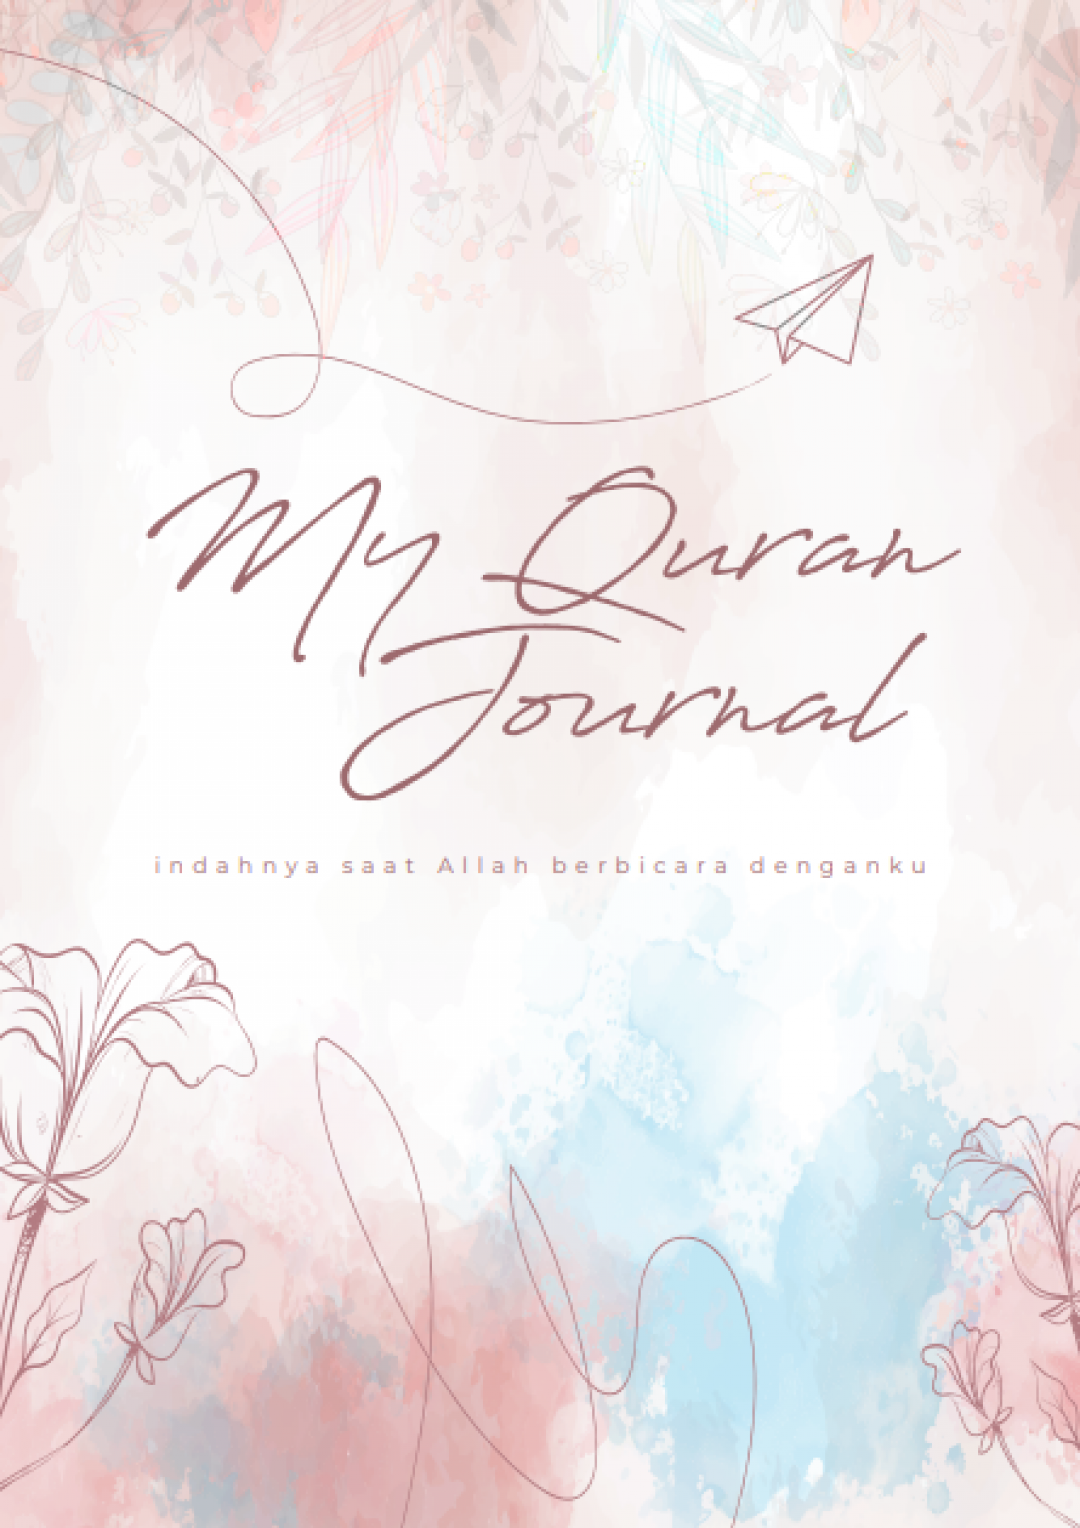 MyQuran Journal